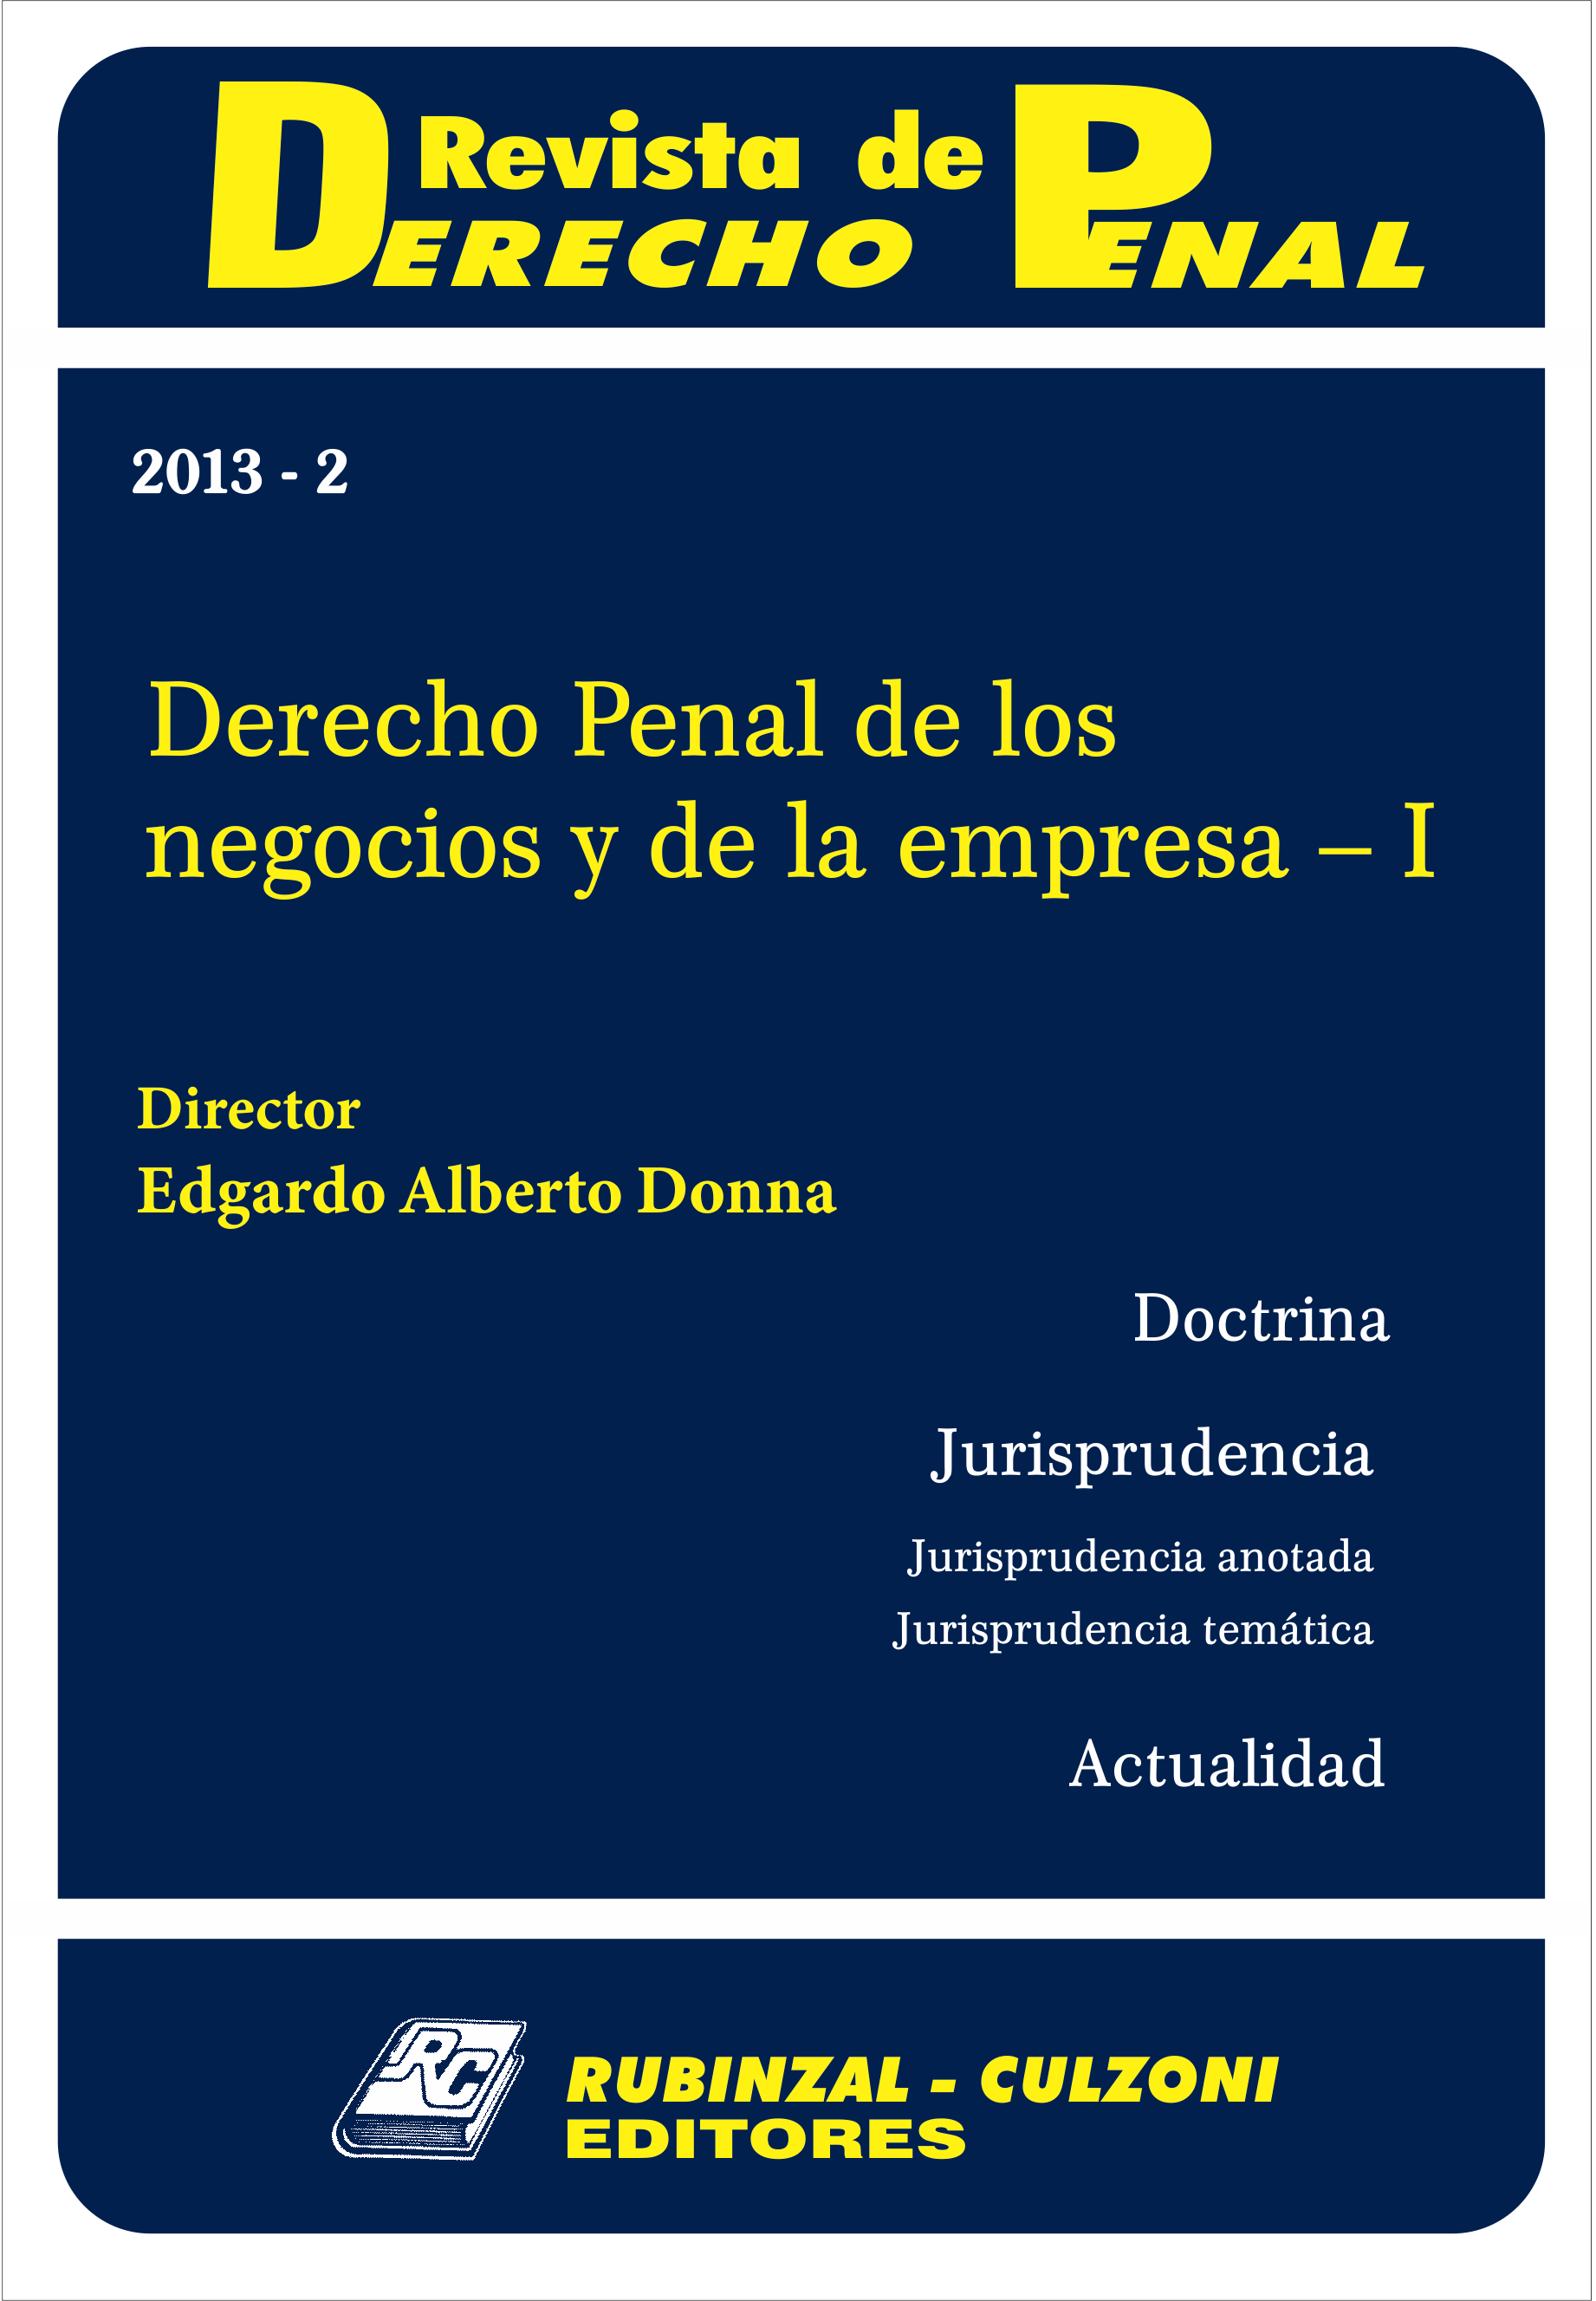 Revista de Derecho Penal - Derecho Penal de los negocios y de la empresa - I.